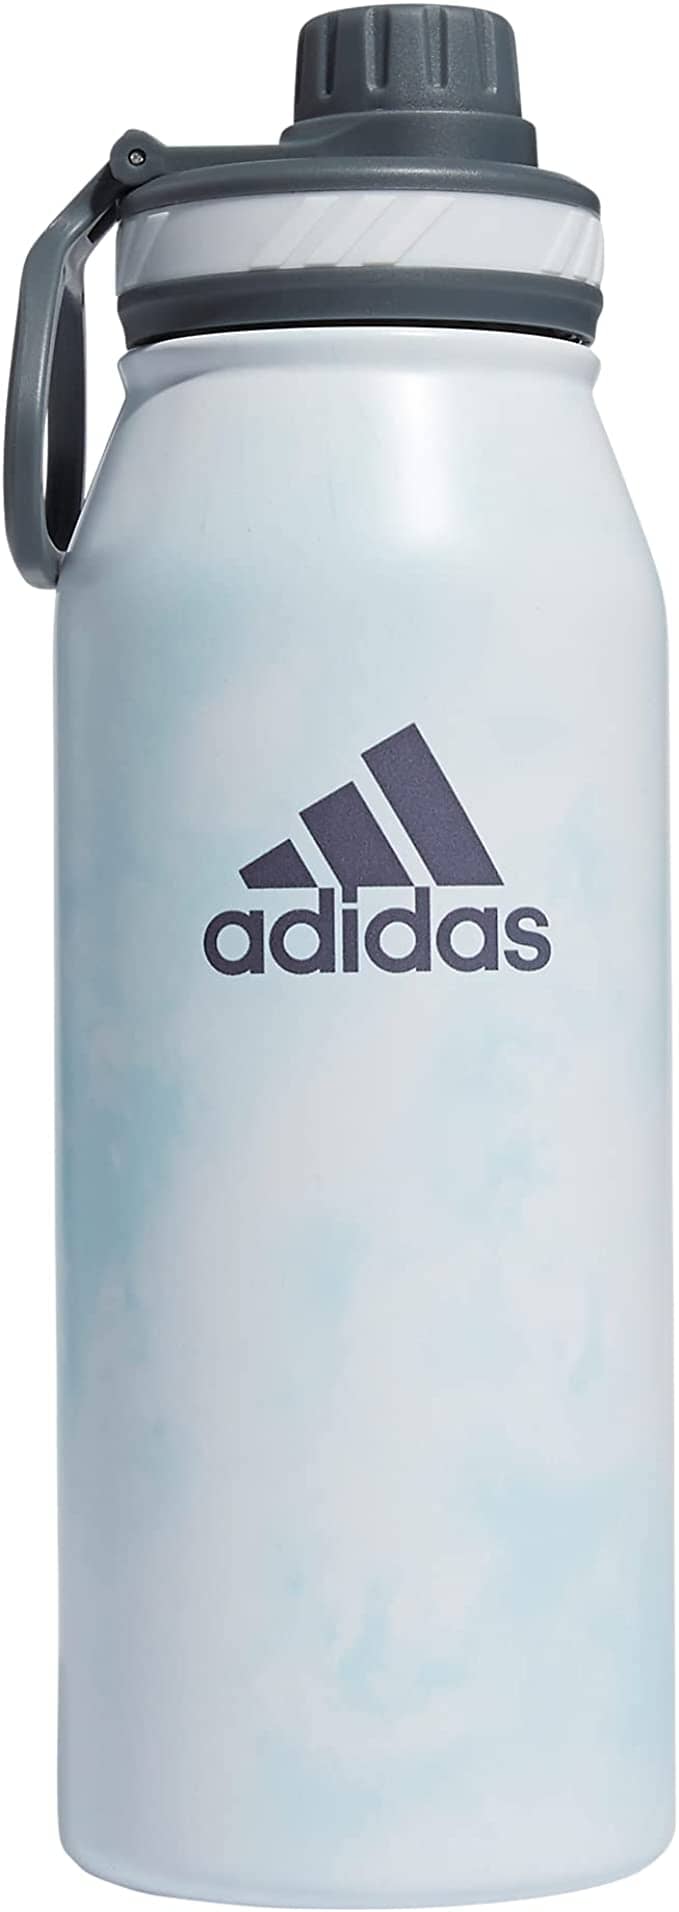 adidas Steel Straw 600 Metal Bottle - Goal Kick Soccer